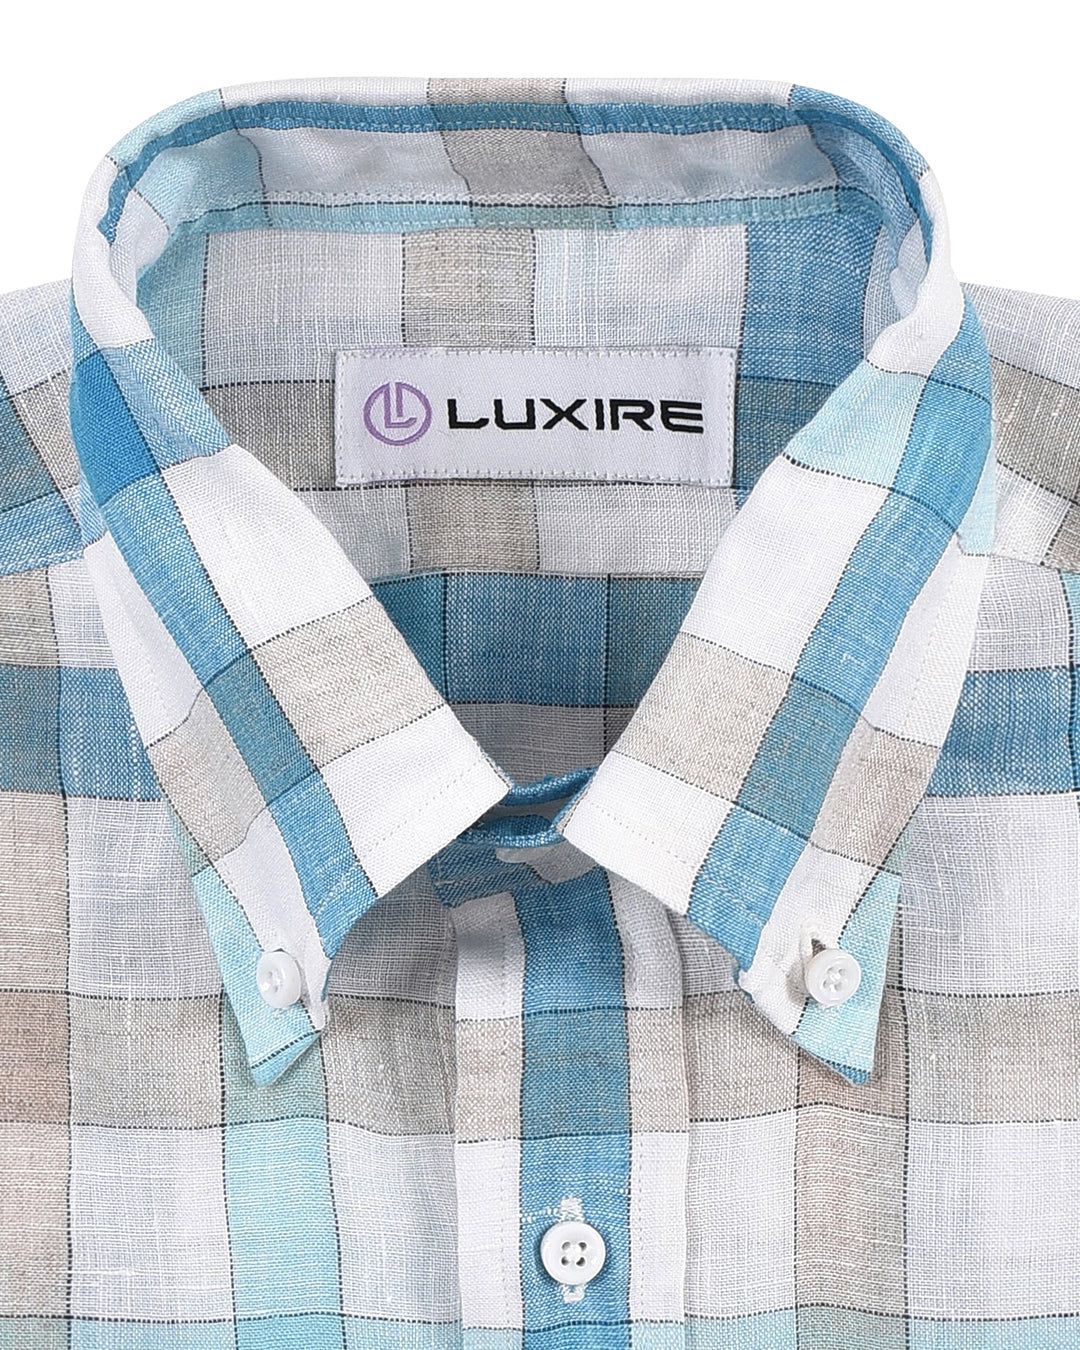 Collar of custom linen shirt for men in white blue ecru checks